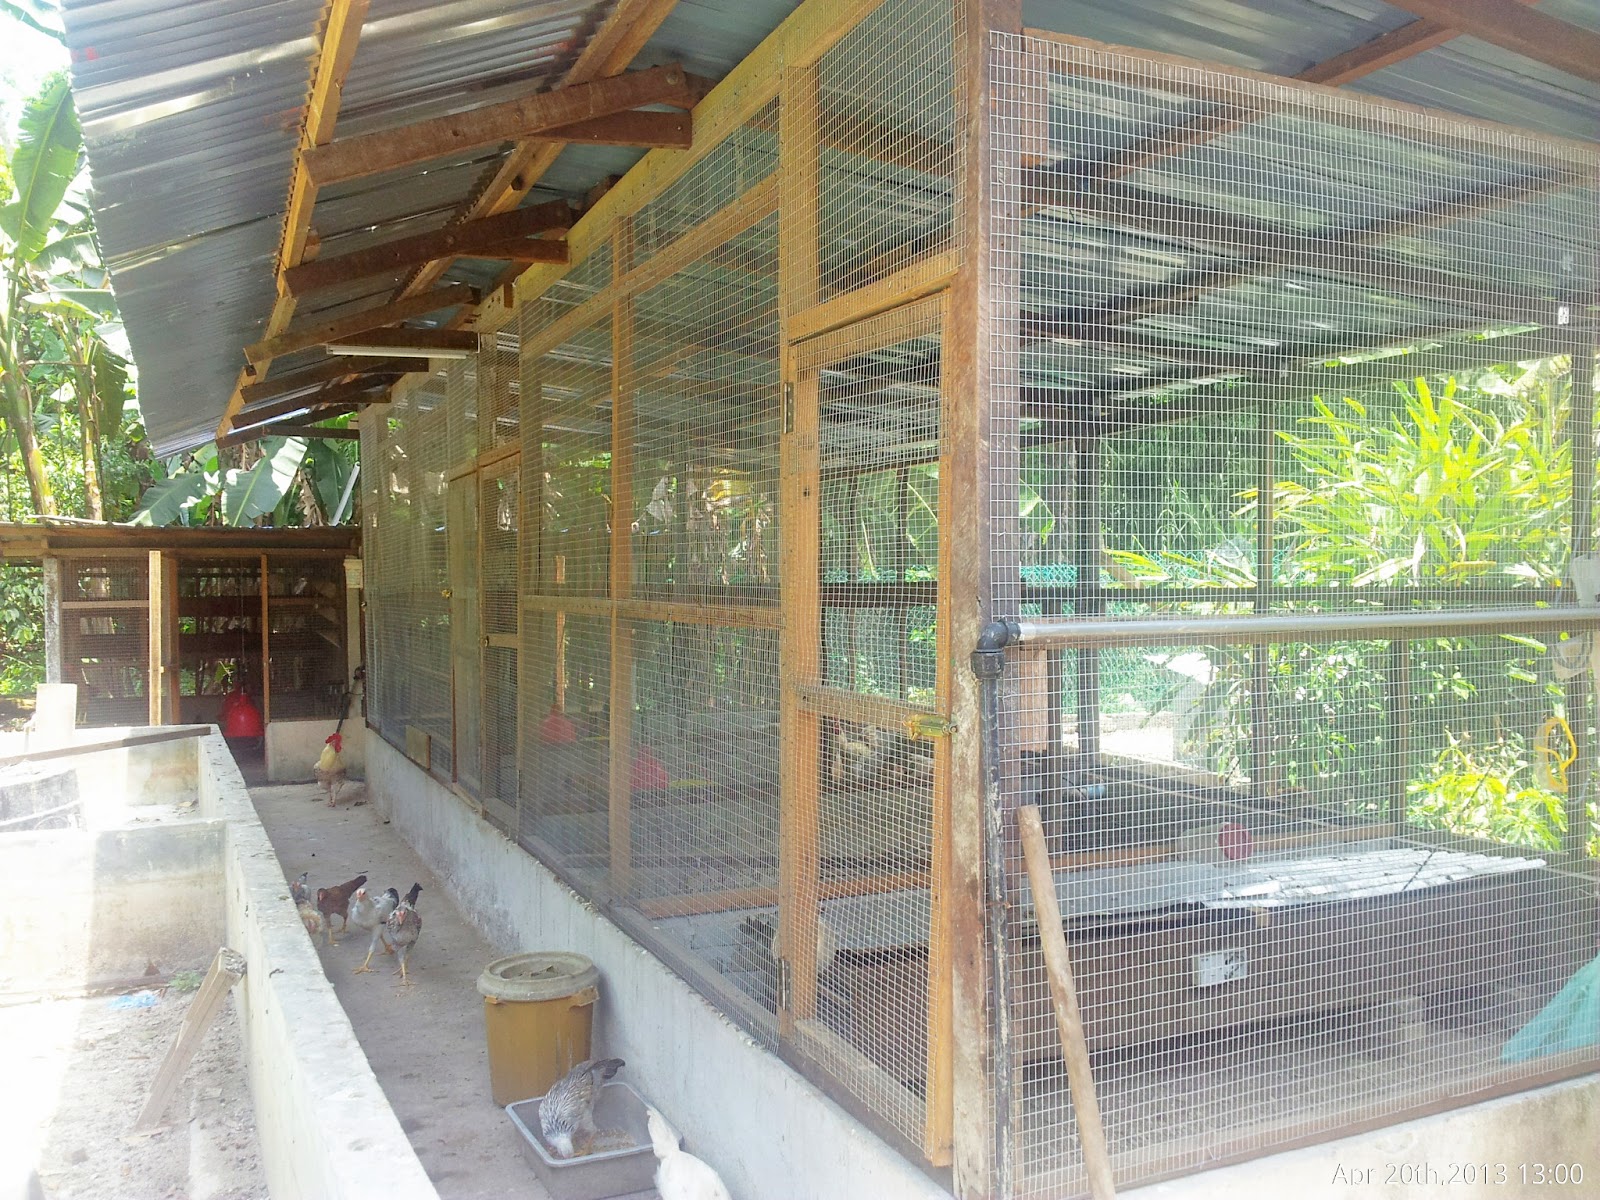 Part 2: Projek Pembinaan Reban Induk Ayam Fasa Kedua - Pemasangan